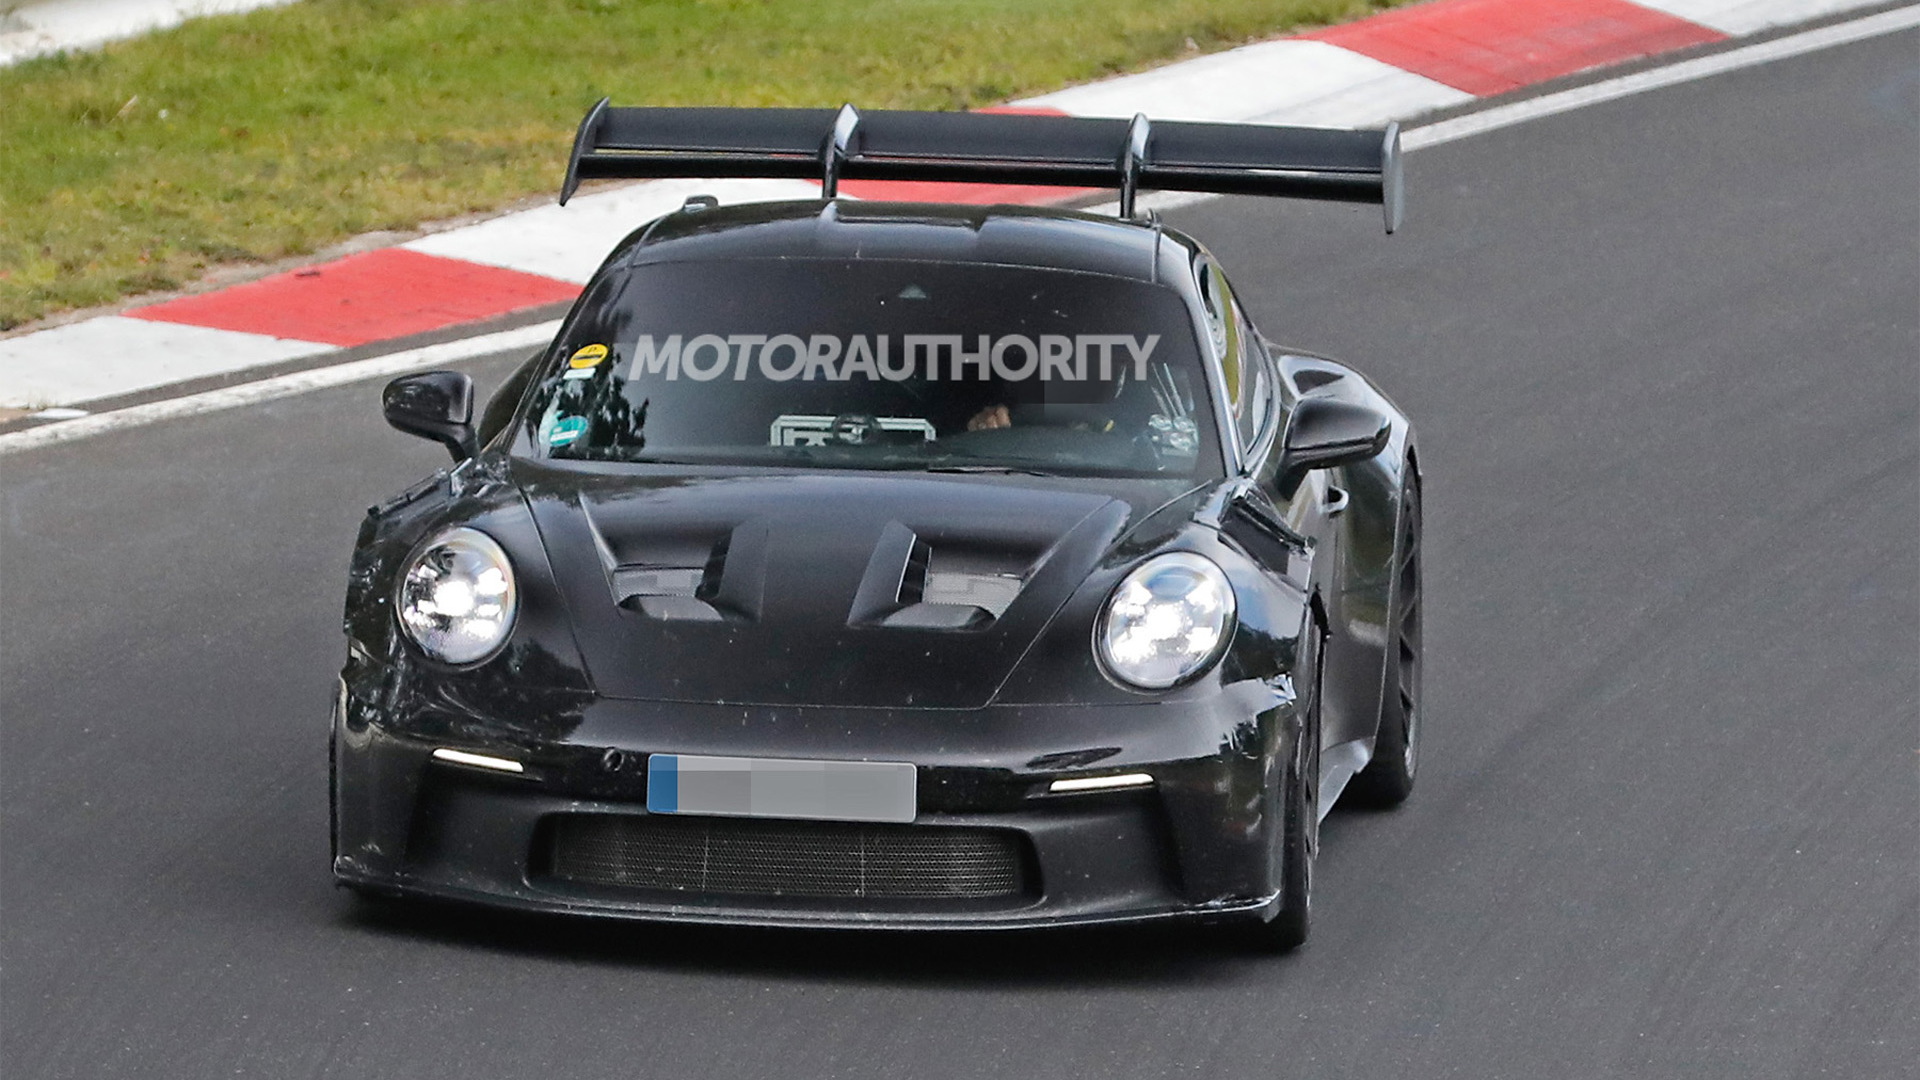 2023 Porsche 911 GT3 RS spy shots - Photo credit: S. Baldauf/SB-Medien